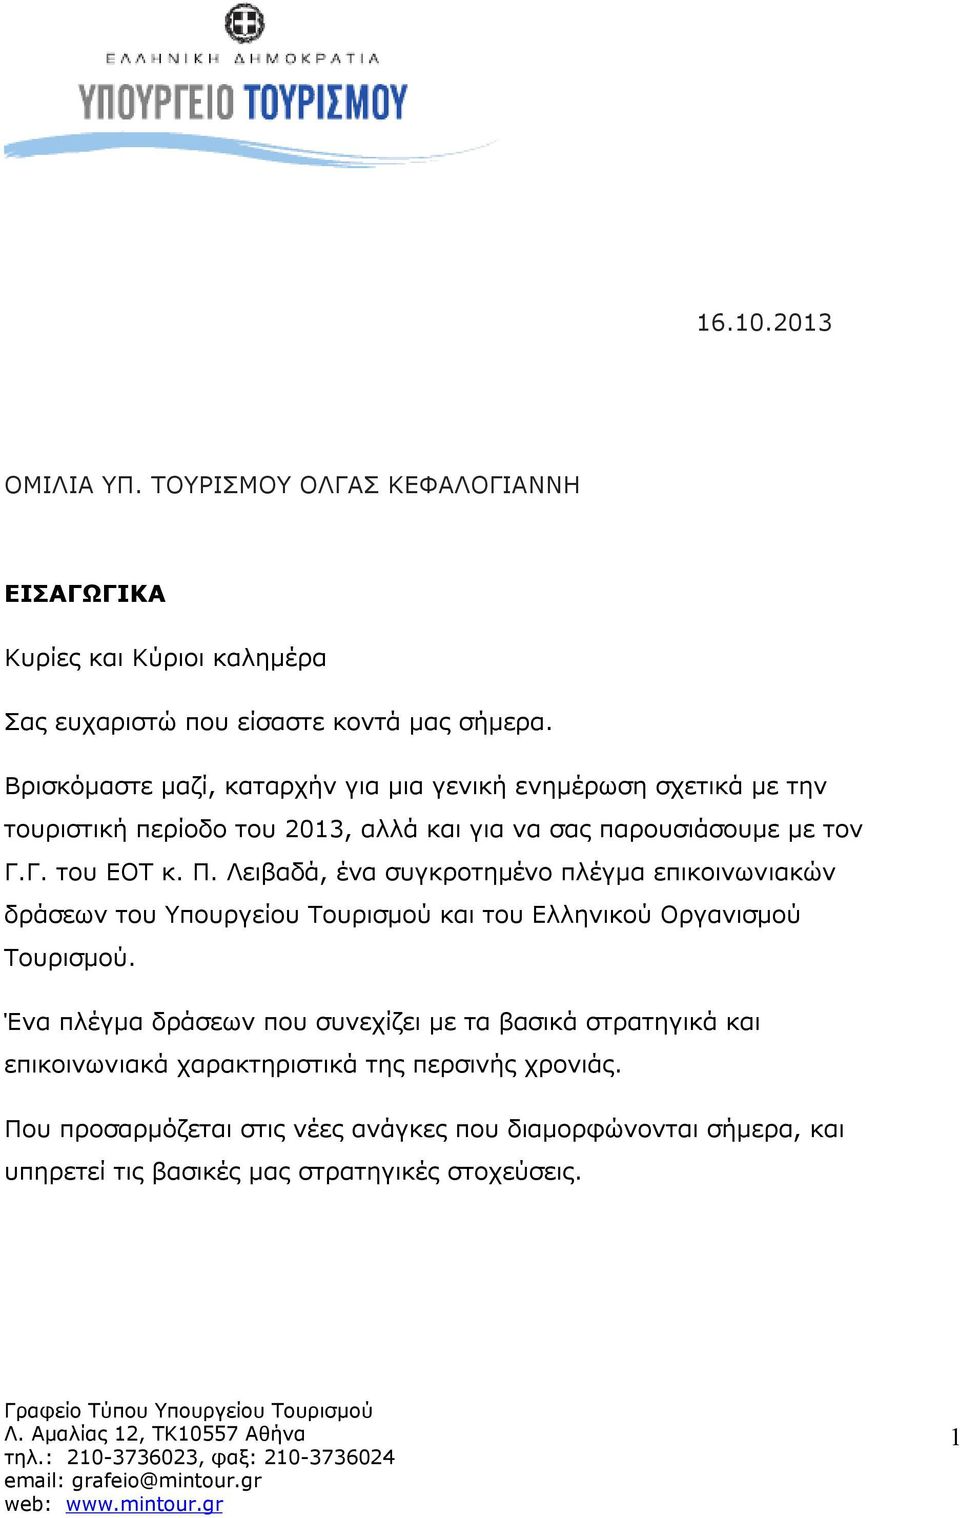 Λειβαδά, ένα συγκροτημένο πλέγμα επικοινωνιακών δράσεων του Υπουργείου Τουρισμού και του Ελληνικού Οργανισμού Τουρισμού.